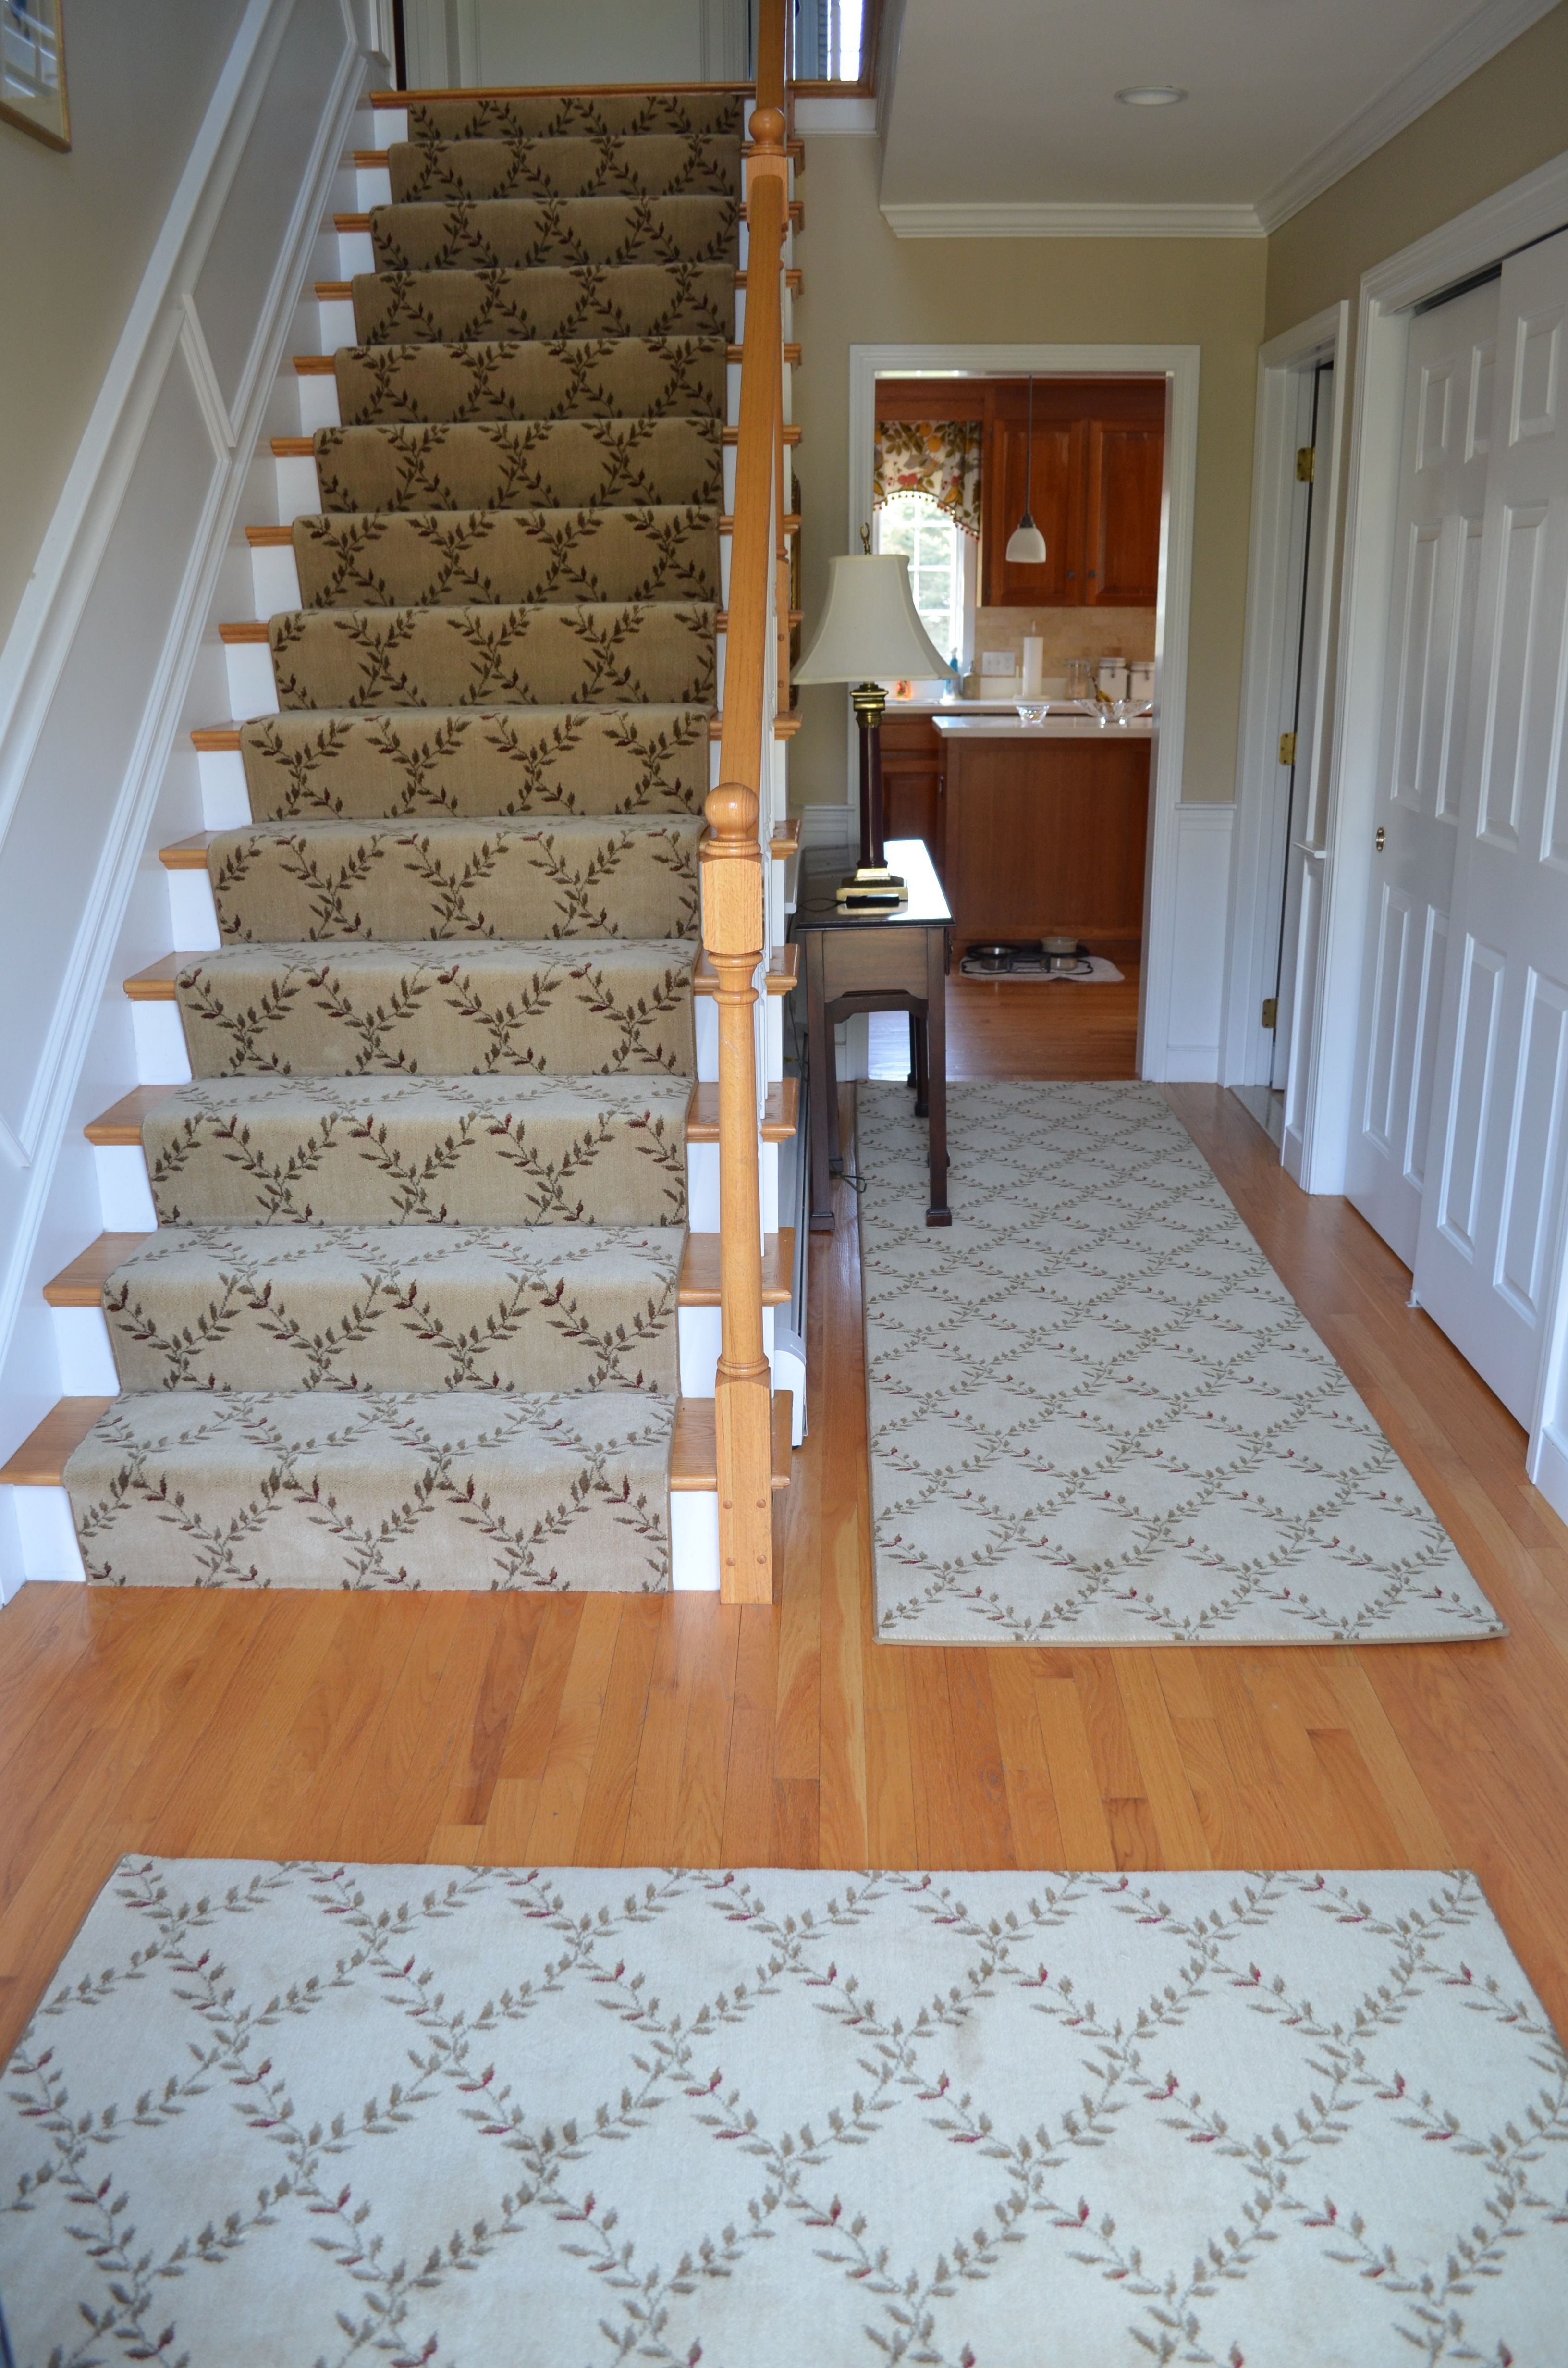 Carpet Runner For Stairs Intended For Runner Hallway Rugs (Photo 6 of 20)